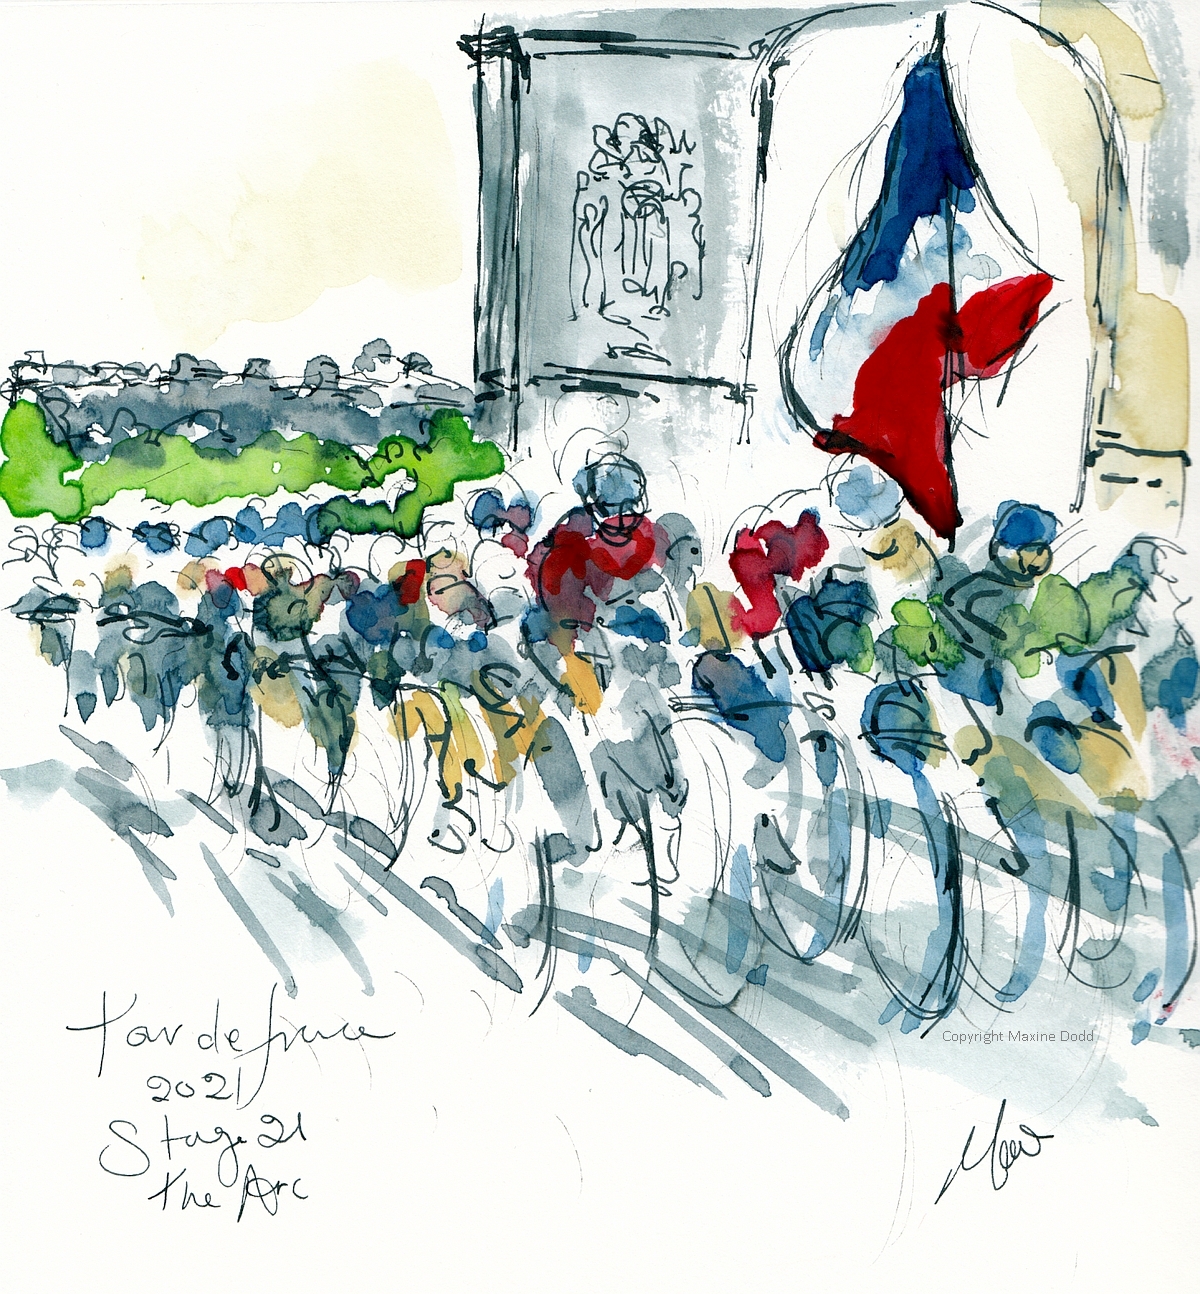 Tour de France 2021: Stage 21 – The Arc